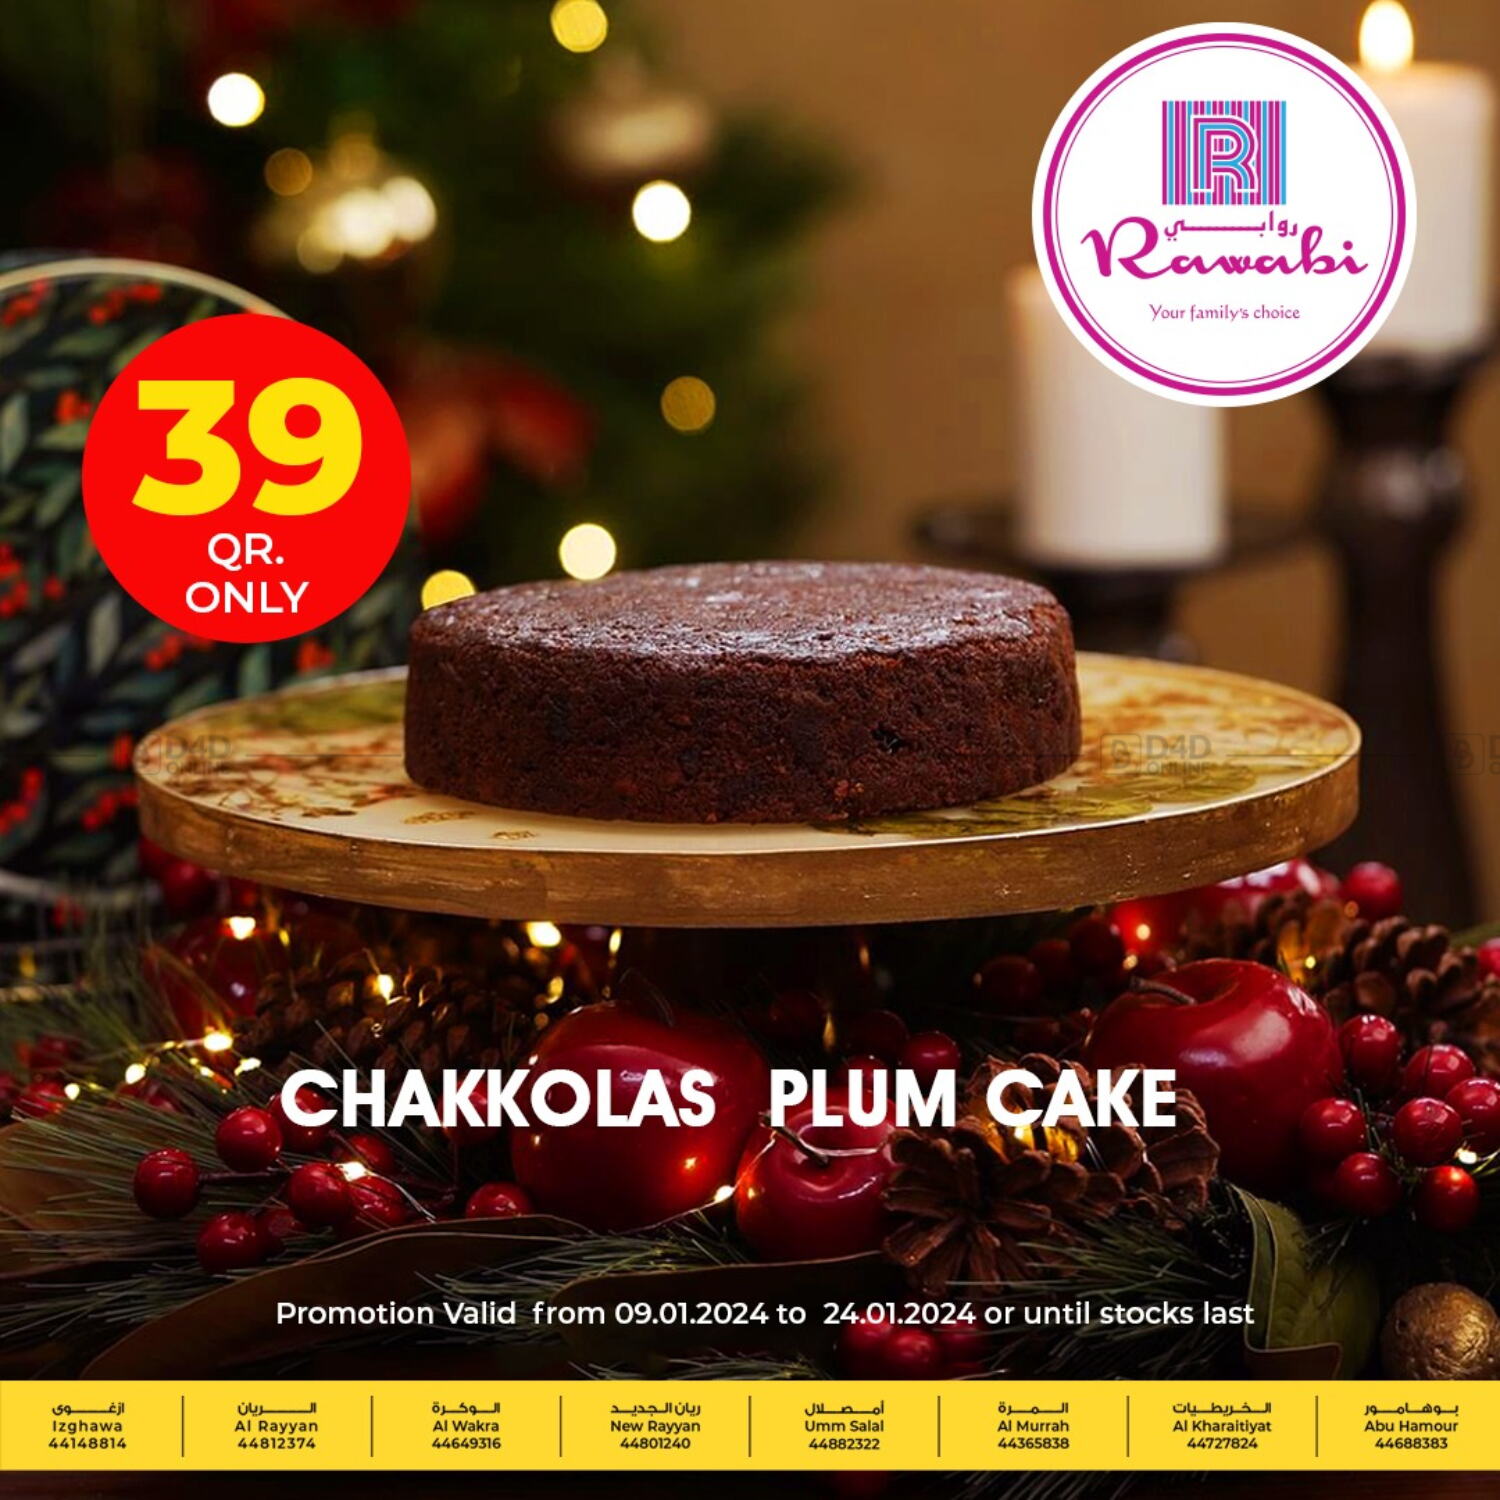 Delicious Plum Cake Recipe | Christmas Special | Home Cake Recipes [Simple  Steps] - YouTube